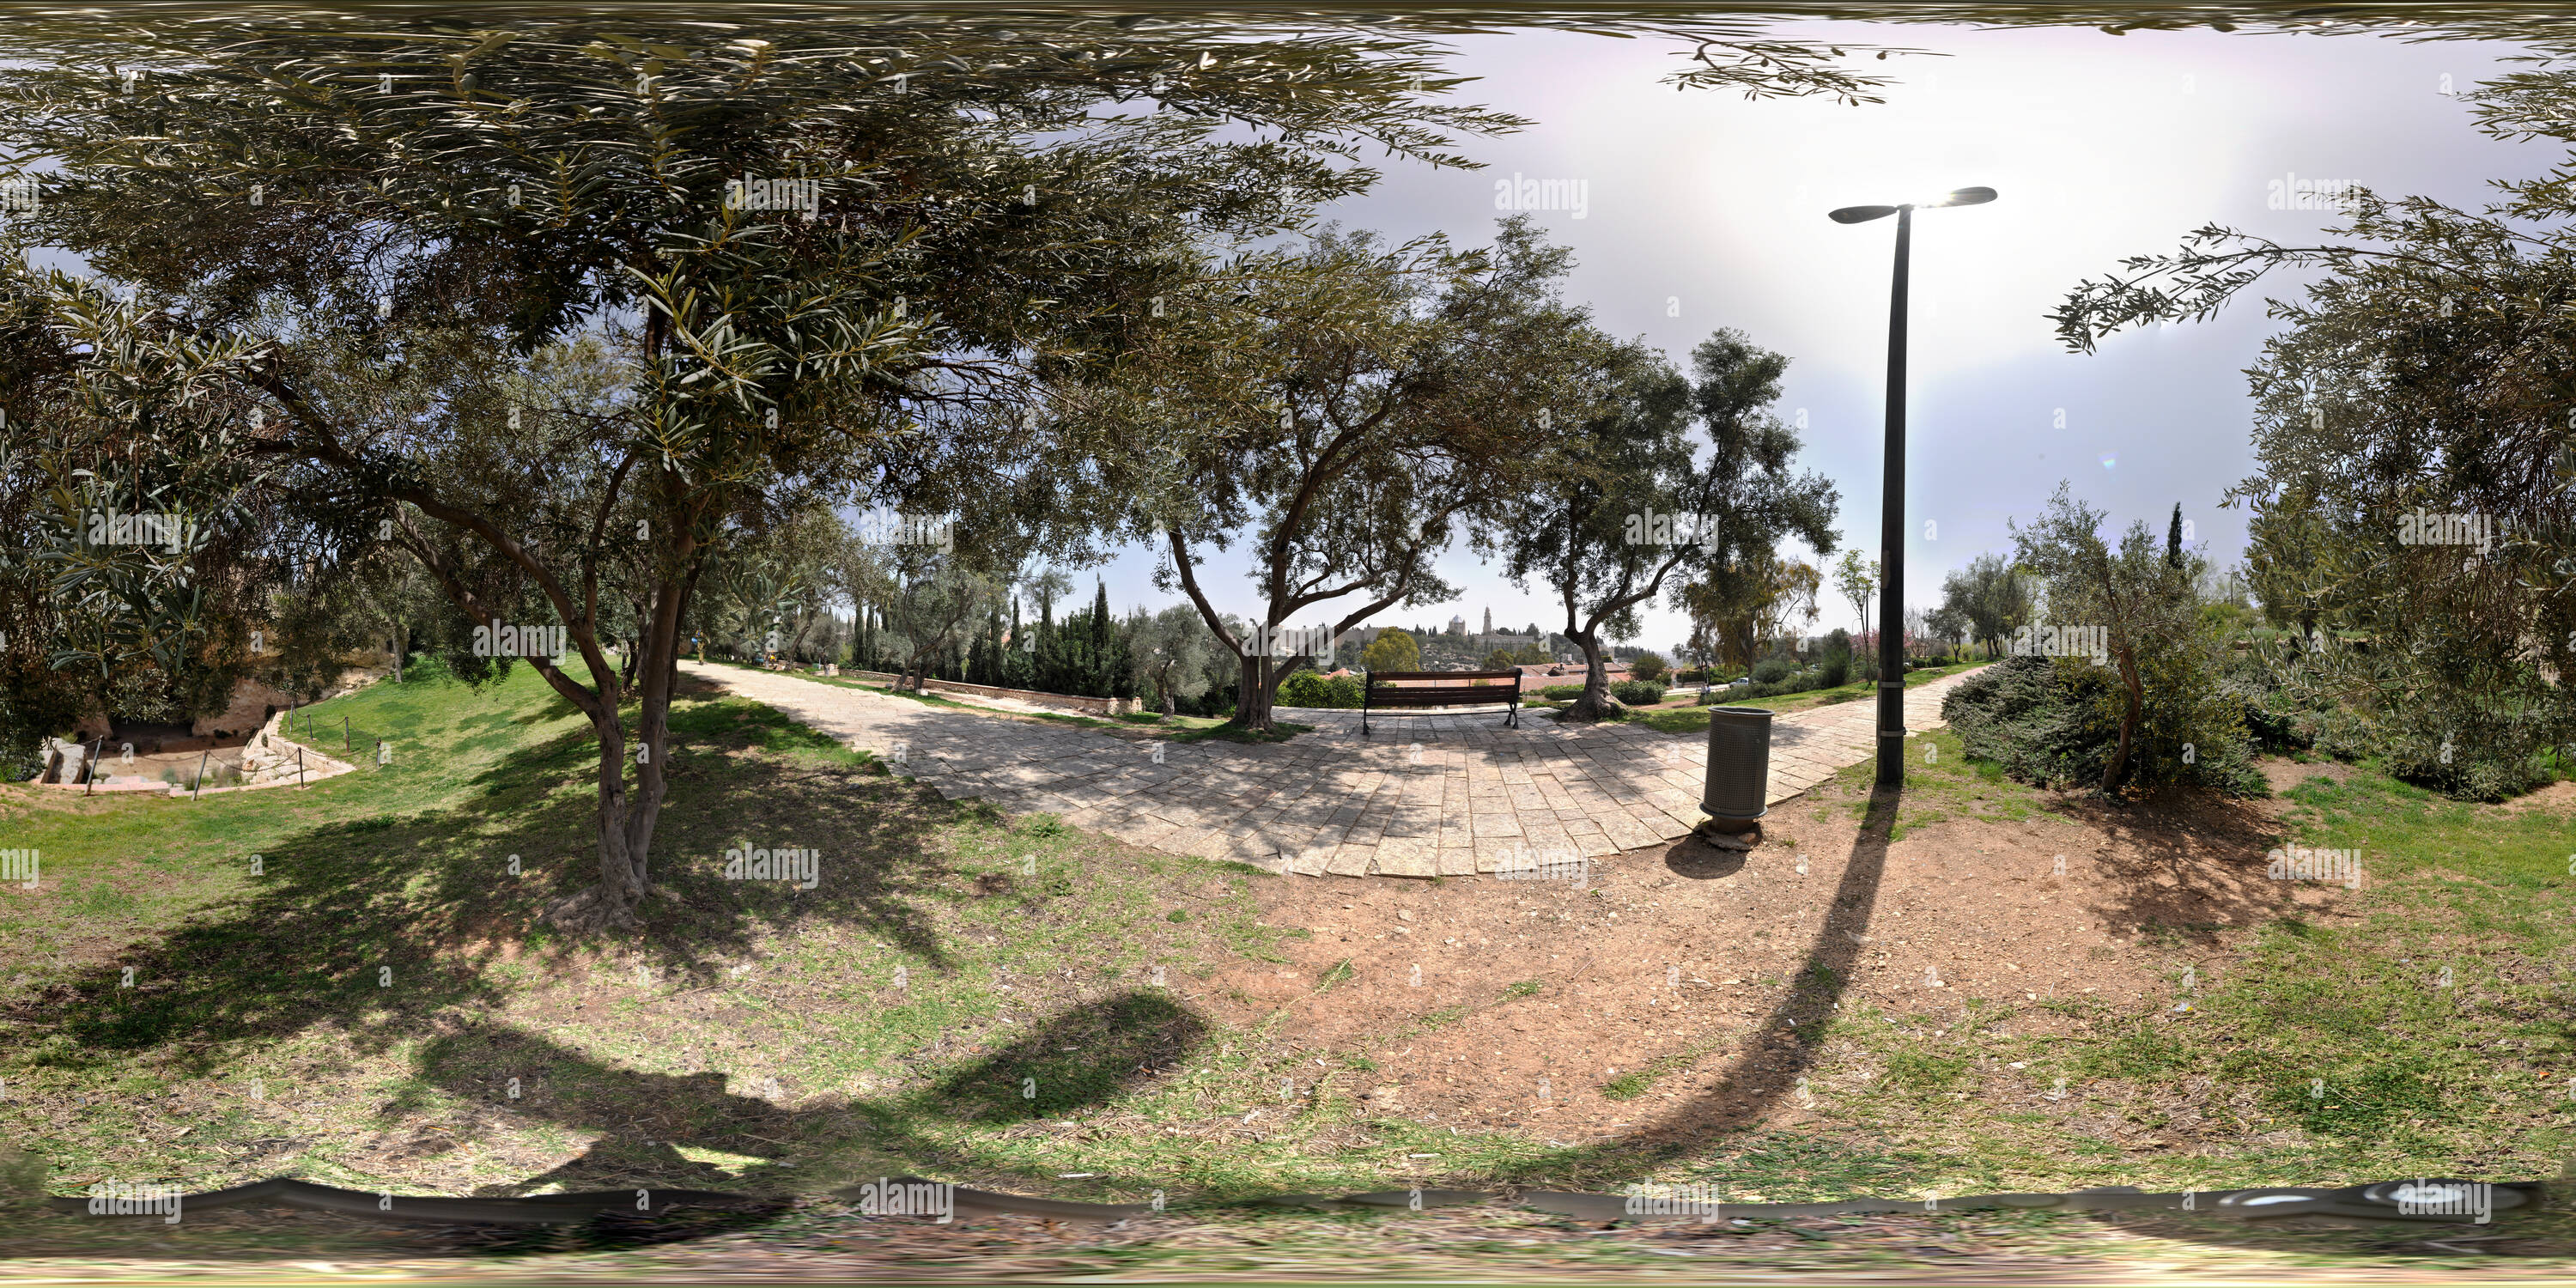 Visualizzazione panoramica a 360 gradi di Mitchelpark gegenüber dem Sion a Gerusalemme